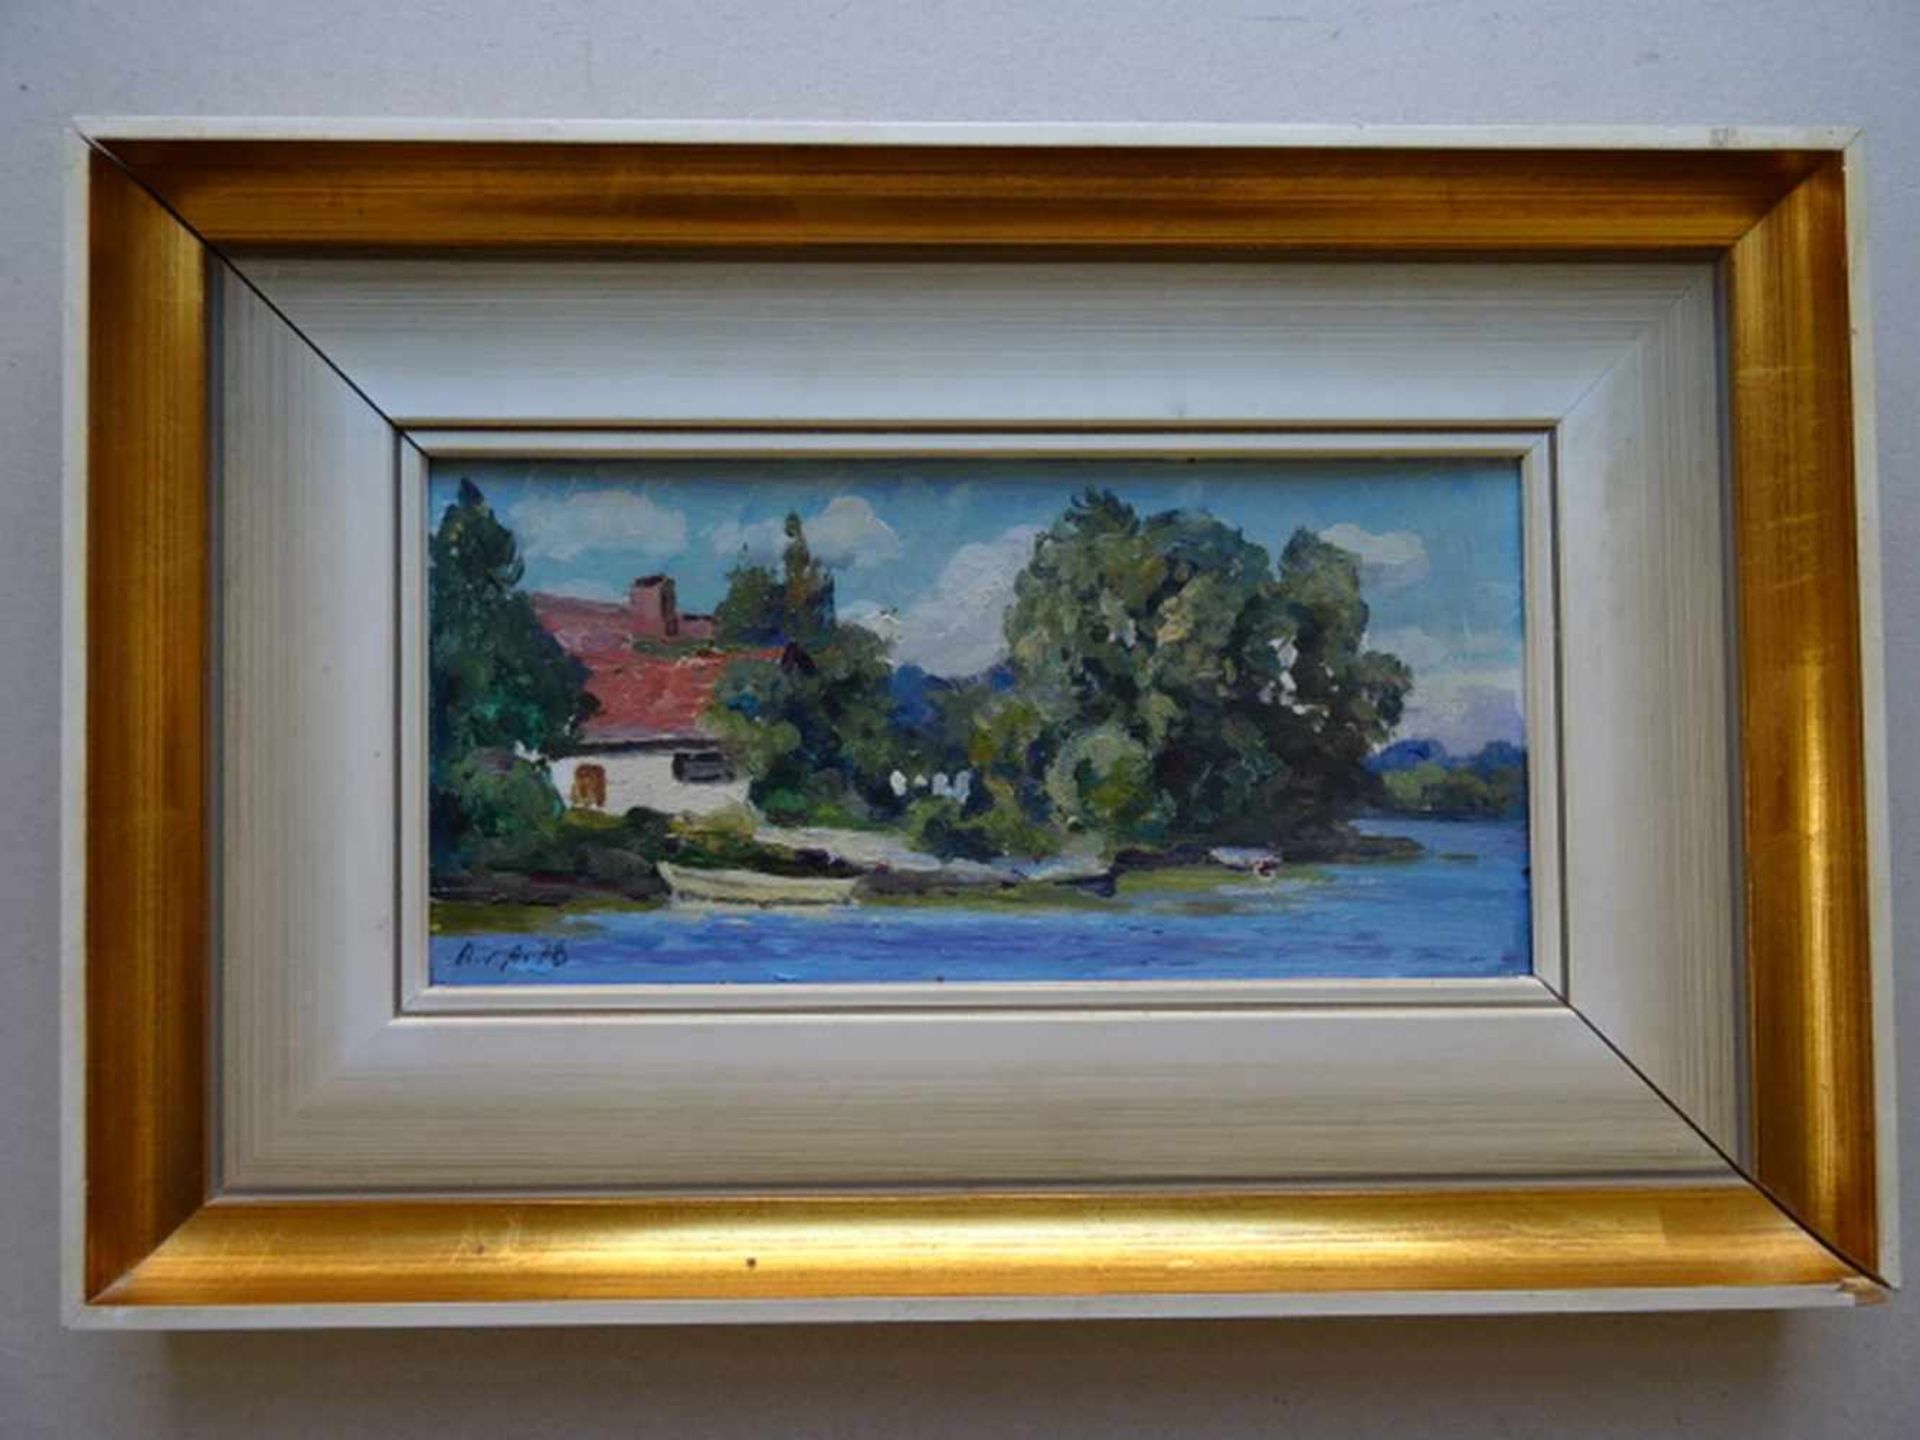 Assaulenko, Alexej von(Lubny 1913 - 1989 Plön). Haus am See. Öl auf Pappe. 1978. Unten links